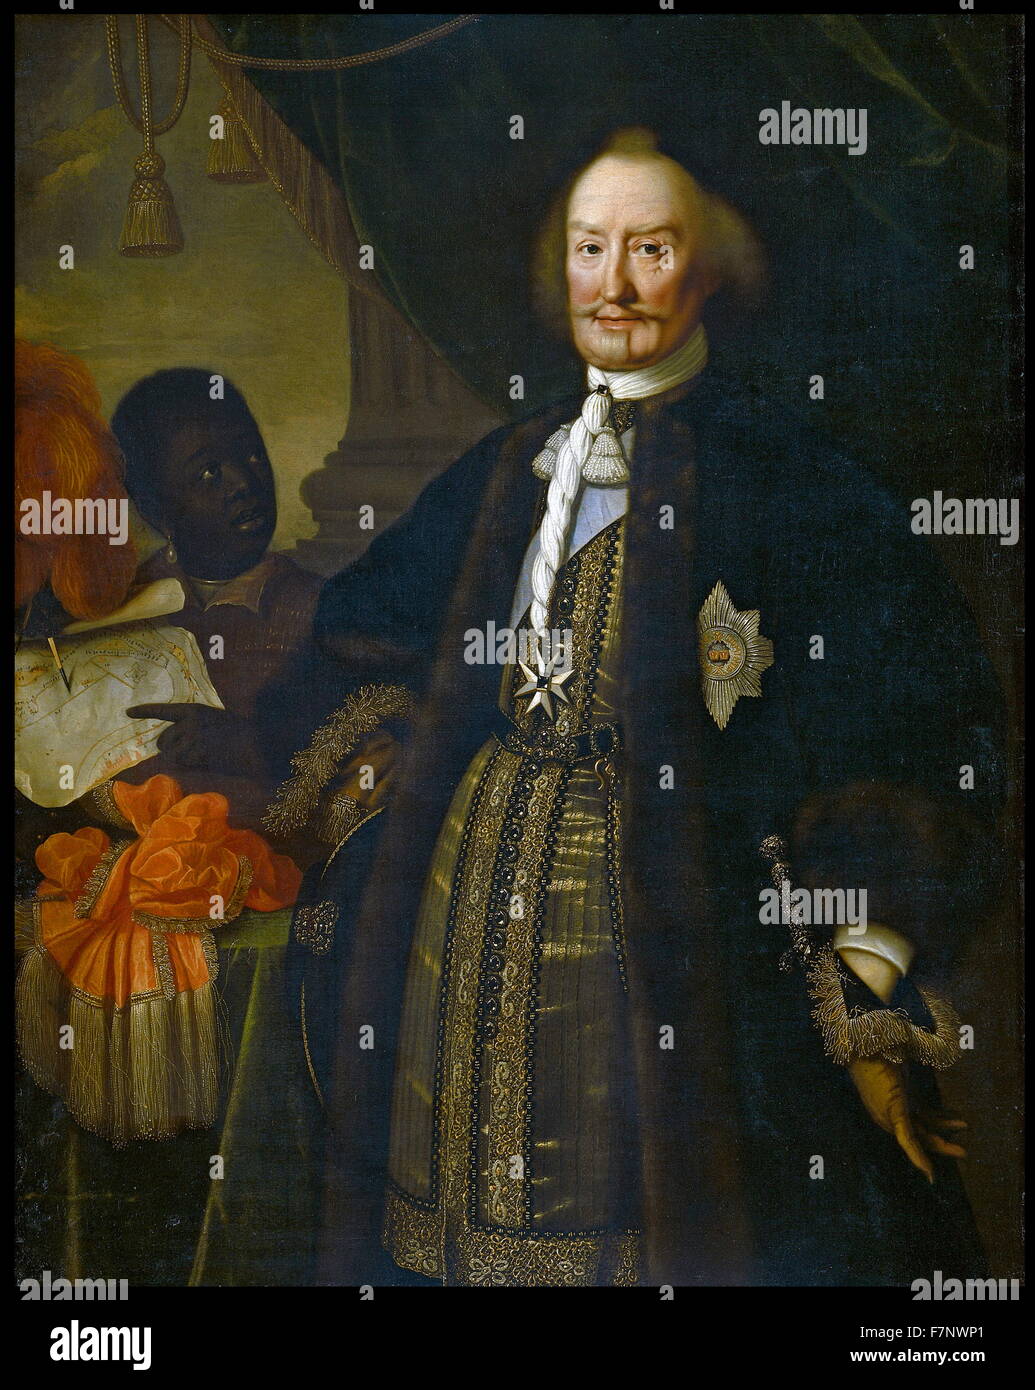 Johan Maurits van Nassau, ritratto di Pieter Nason, 1675. Johan Maurits van Nassau, (1604 - 1679), coloniale olandese governatore del Brasile Foto Stock